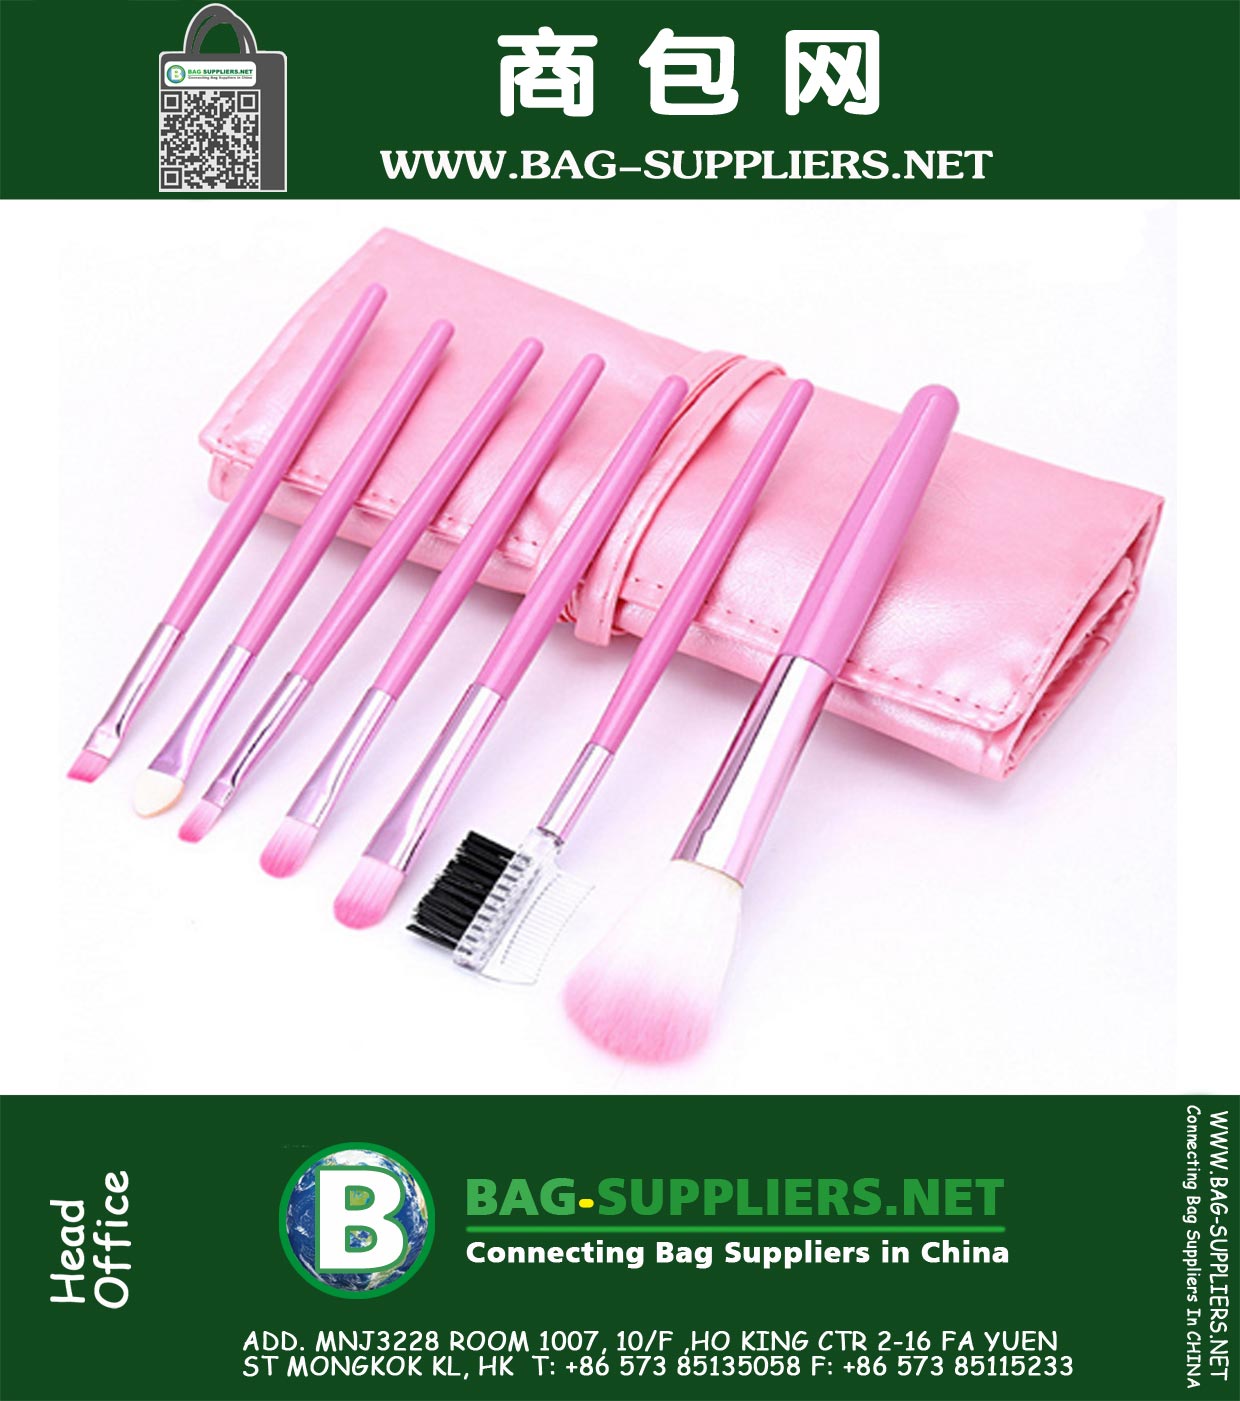 7 PCS cepillos del maquillaje del bolso de cuero rosa Conjunto, Cara profesional y una herramienta de belleza cepillo de sombra de ojos kits del maquillaje